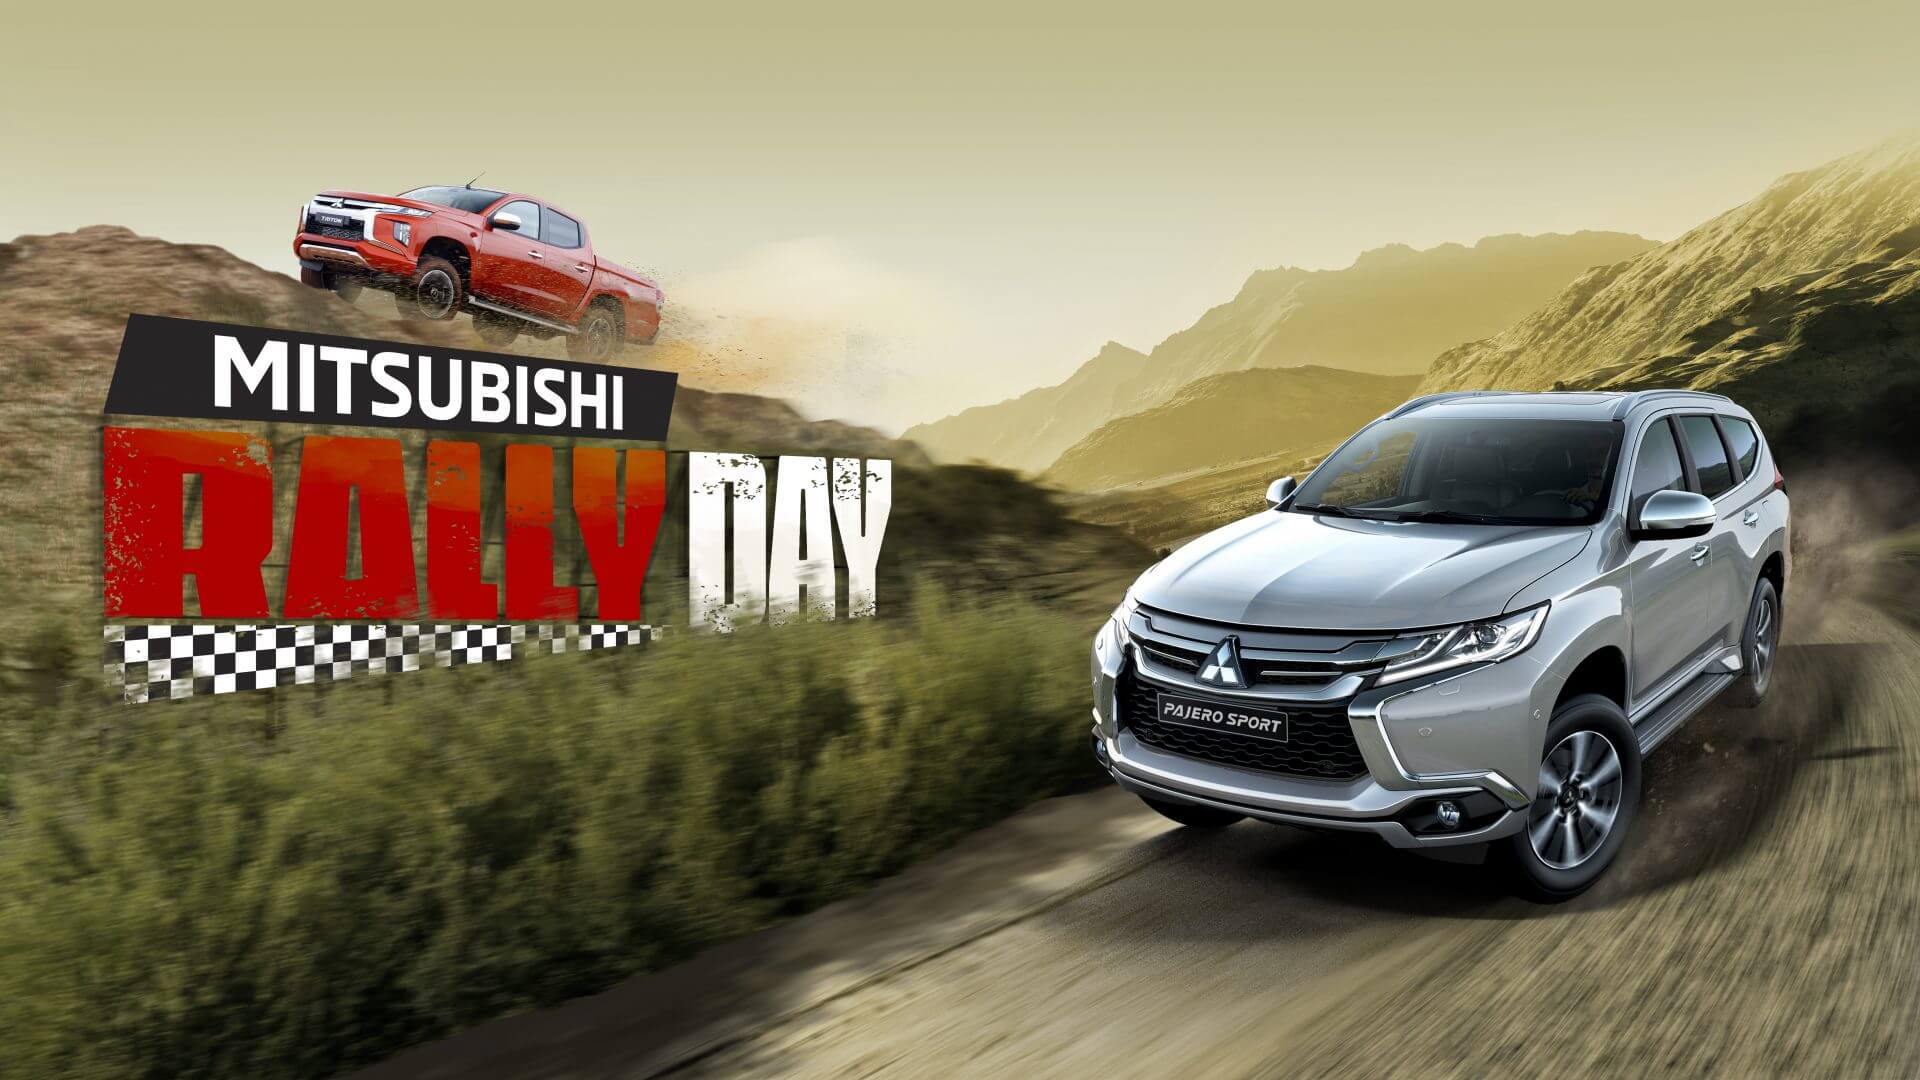 Mitsubishi Motors Việt Nam  MITSUBISHI RALLY DAY  ĐĂNG KÝ TRẢI NGHIỆM  TRITON  PAJERO SPORT CÙNG RACING AKA